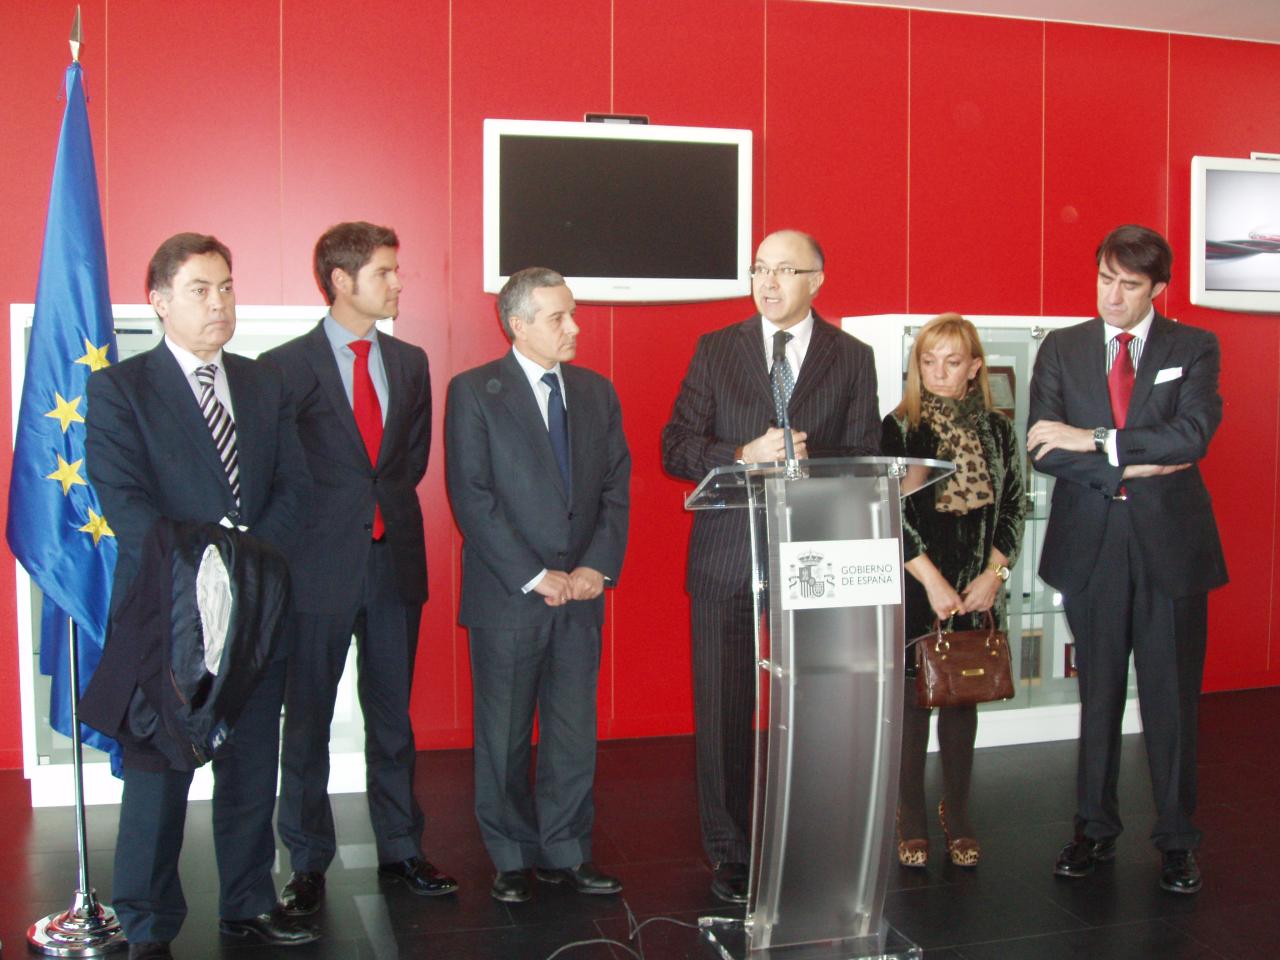 El delegado del Gobierno anuncia en su primera visita al INTECO, en León, un nuevo proyecto europeo en el ámbito de la ciberseguridad realizado por este centro estatal de carácter innovador al servicio de la Sociedad de la Información